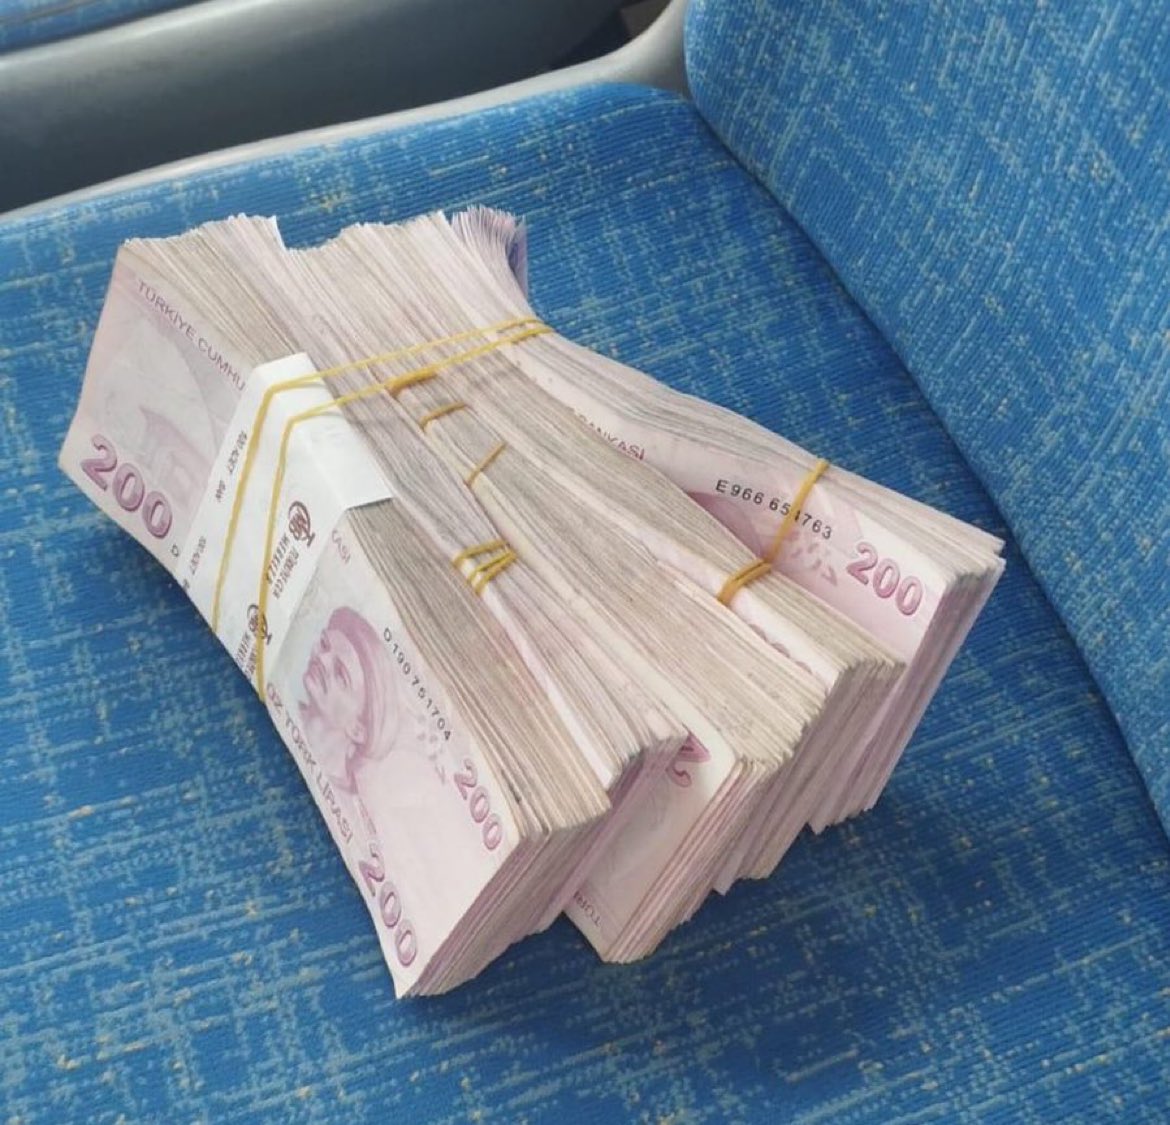 Antalya’da otobüs şoförü, otobüste unutulan yüklü miktarda parayı sahibine ulaştırdı.